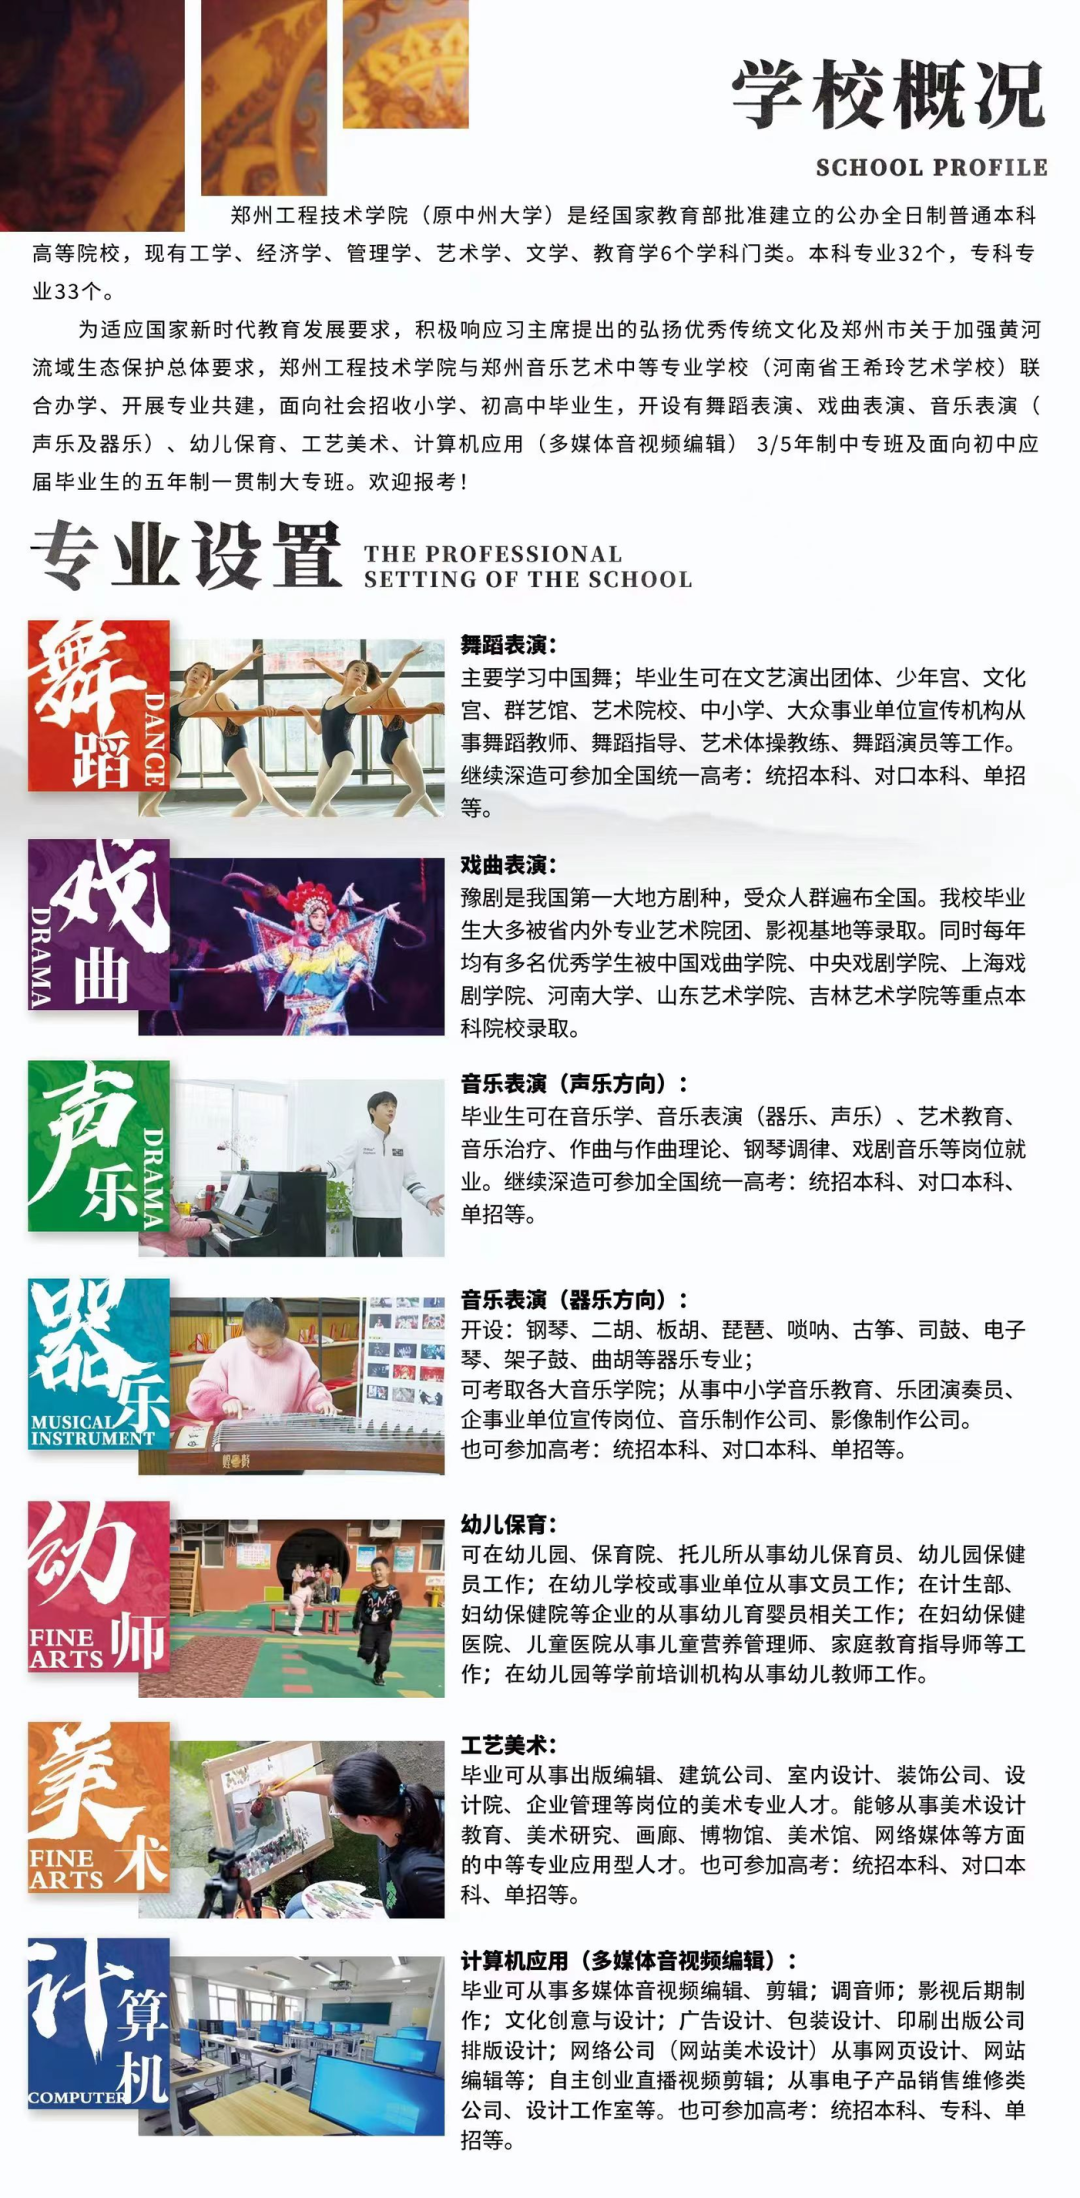 郑州音乐艺术中等专业学校与河南广播电视台全媒体签约“战略合作伙伴” (http://www.hnyixiao.com/) 校内新闻 第9张